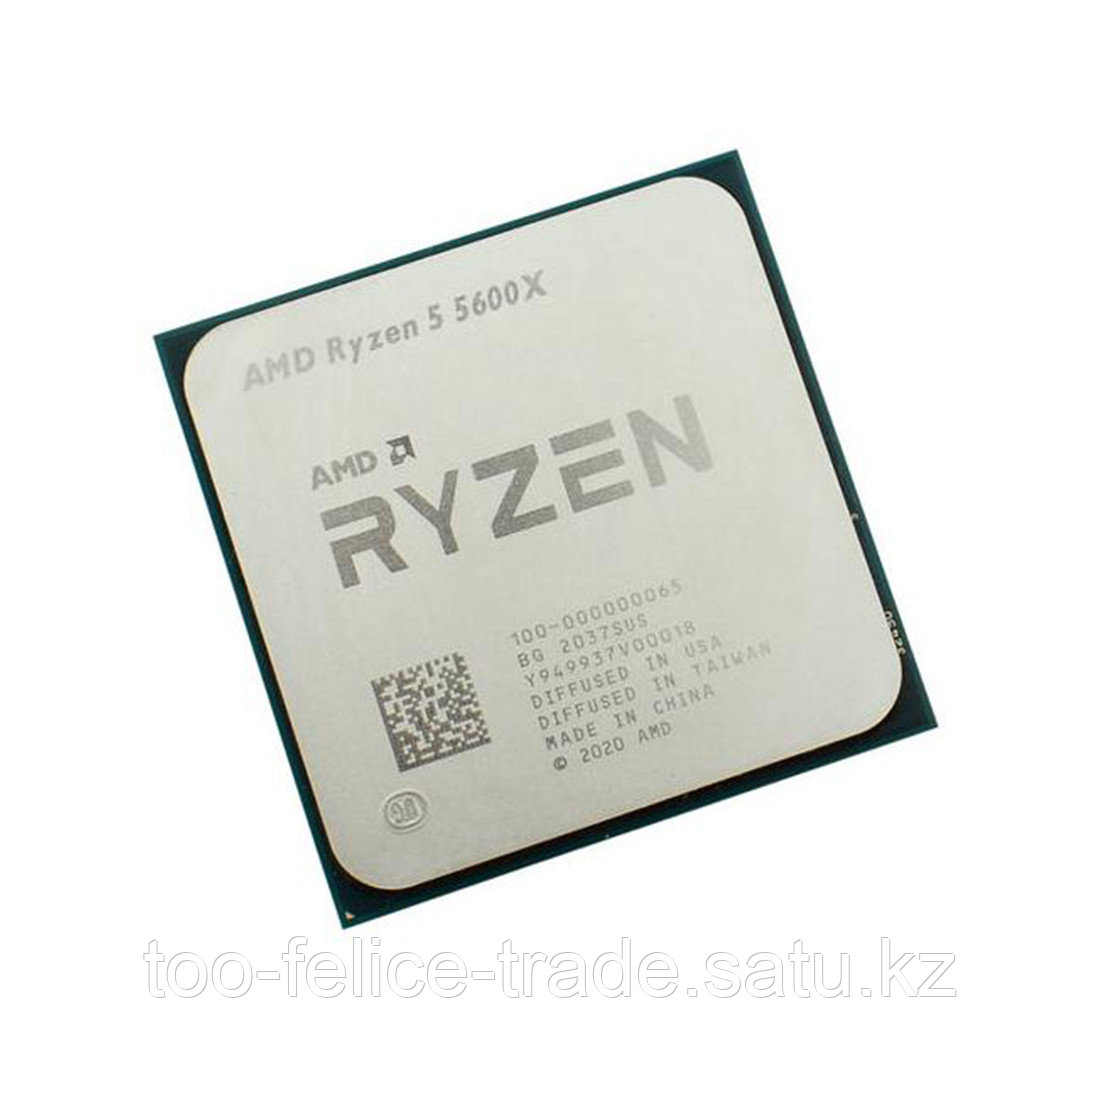 CPU AMD Ryzen 5 5600X OEM AM4, 100-000000065